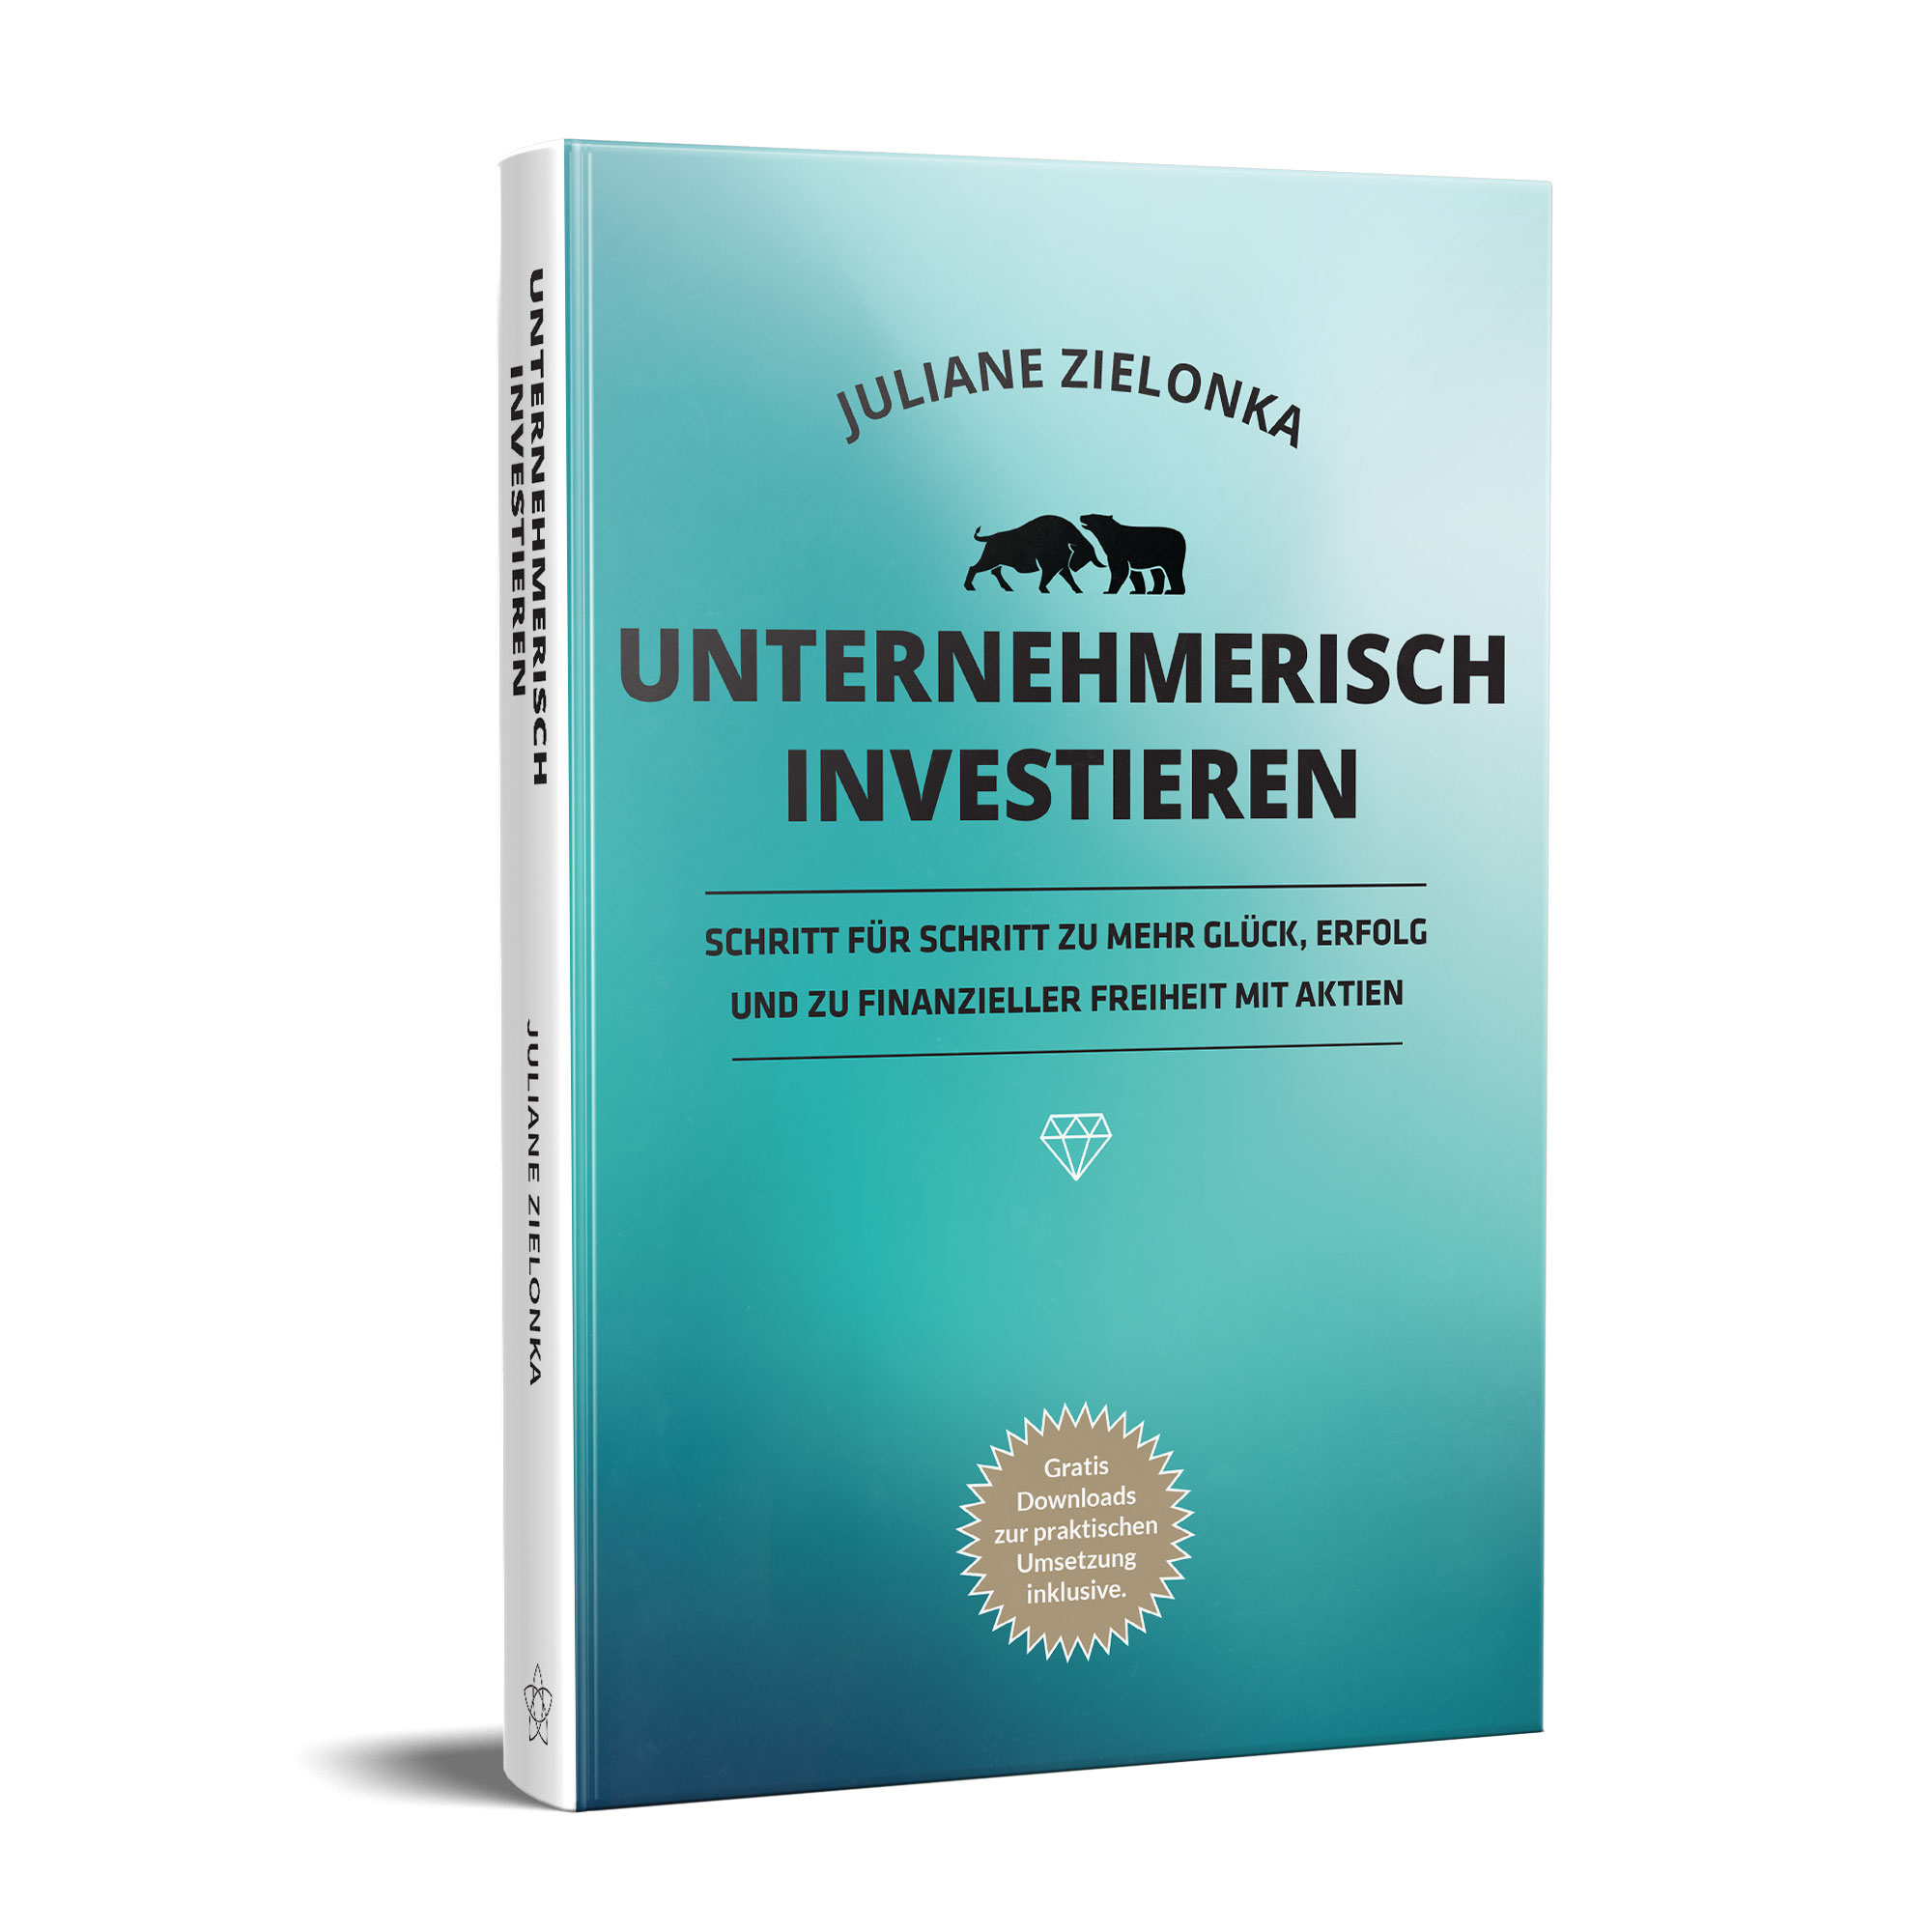 Das Cover des deutschen Buches „Unternehmerisch Investieren“ von Juliane Zielonka mit einem blaugrünen Hintergrund mit Farbverlauf und einem Bullen- und einem Bärensymbol über dem Titel.